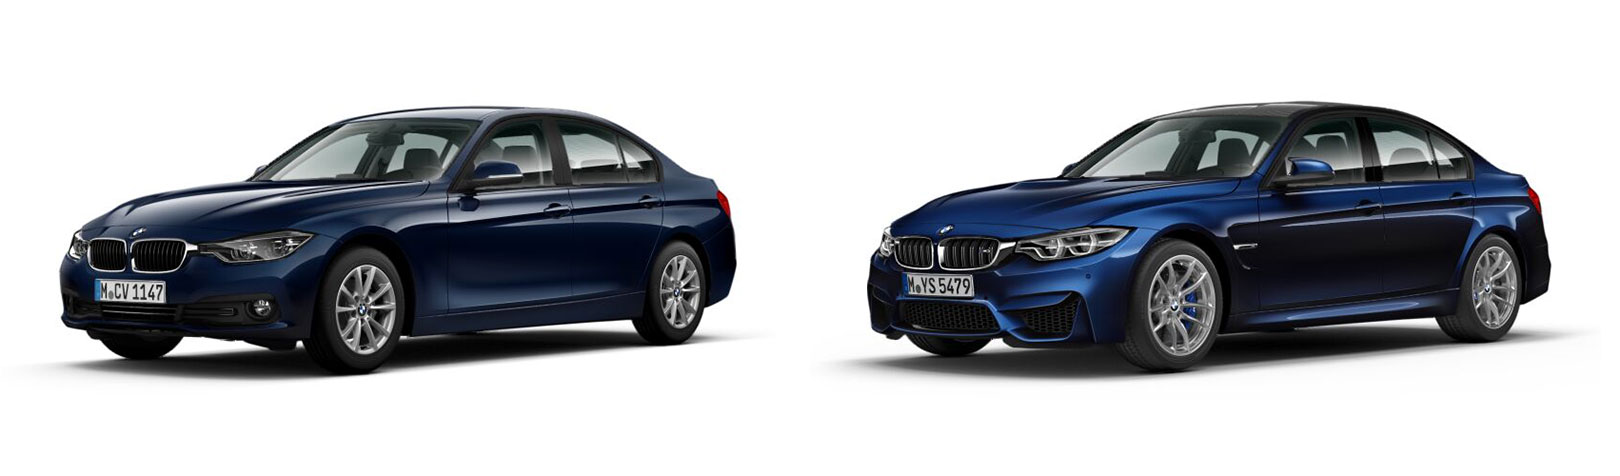 BMW 3er (F30) und BMW M3 (F80)